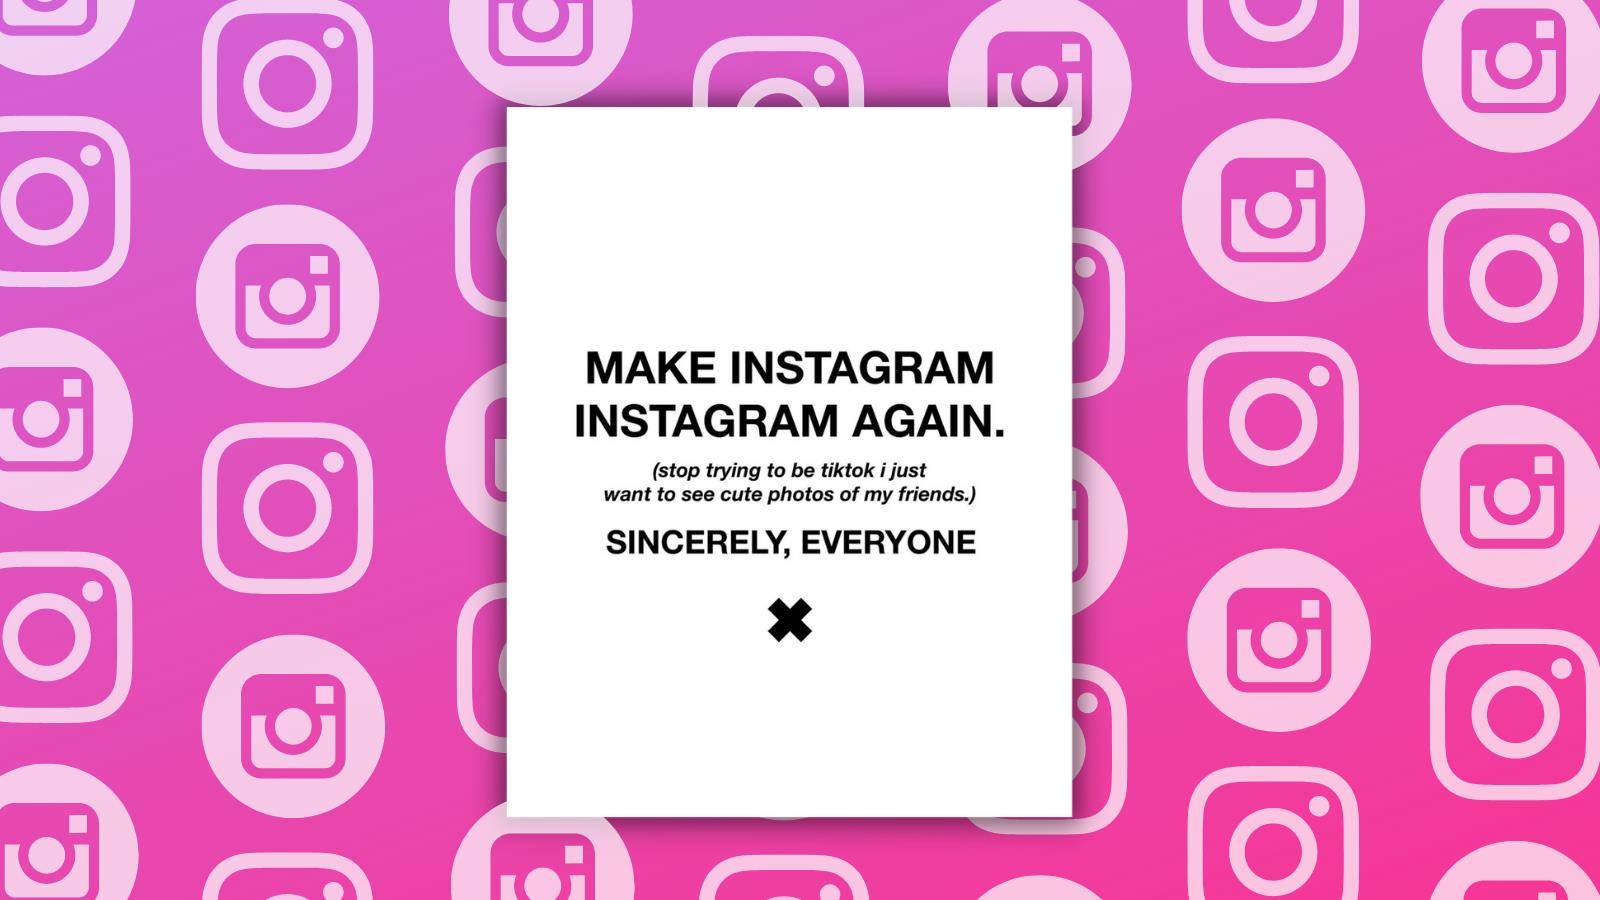 Gizmodo - Instagram dopo che “Tiktok” ha deciso di diventare “brutto” con TikTok